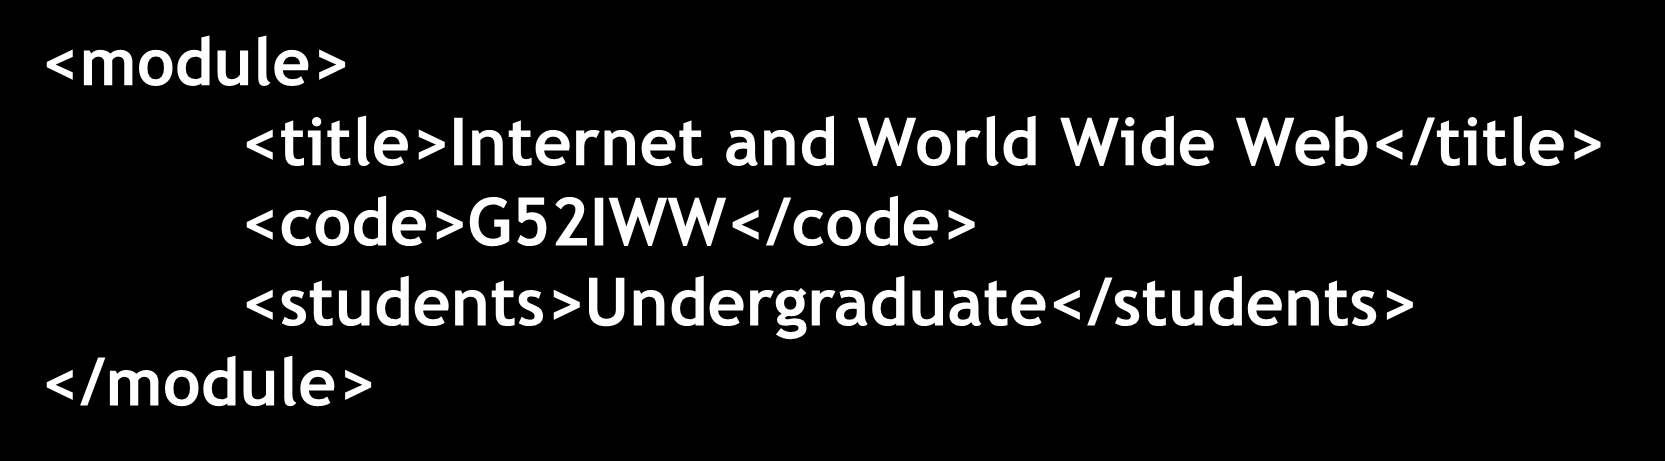 XML Felhasználó által definiálható és domain specifikus HTML: <H1>Internet and World Wide Web</H1> <UL> <LI>Code: G52IWW <LI>Students: